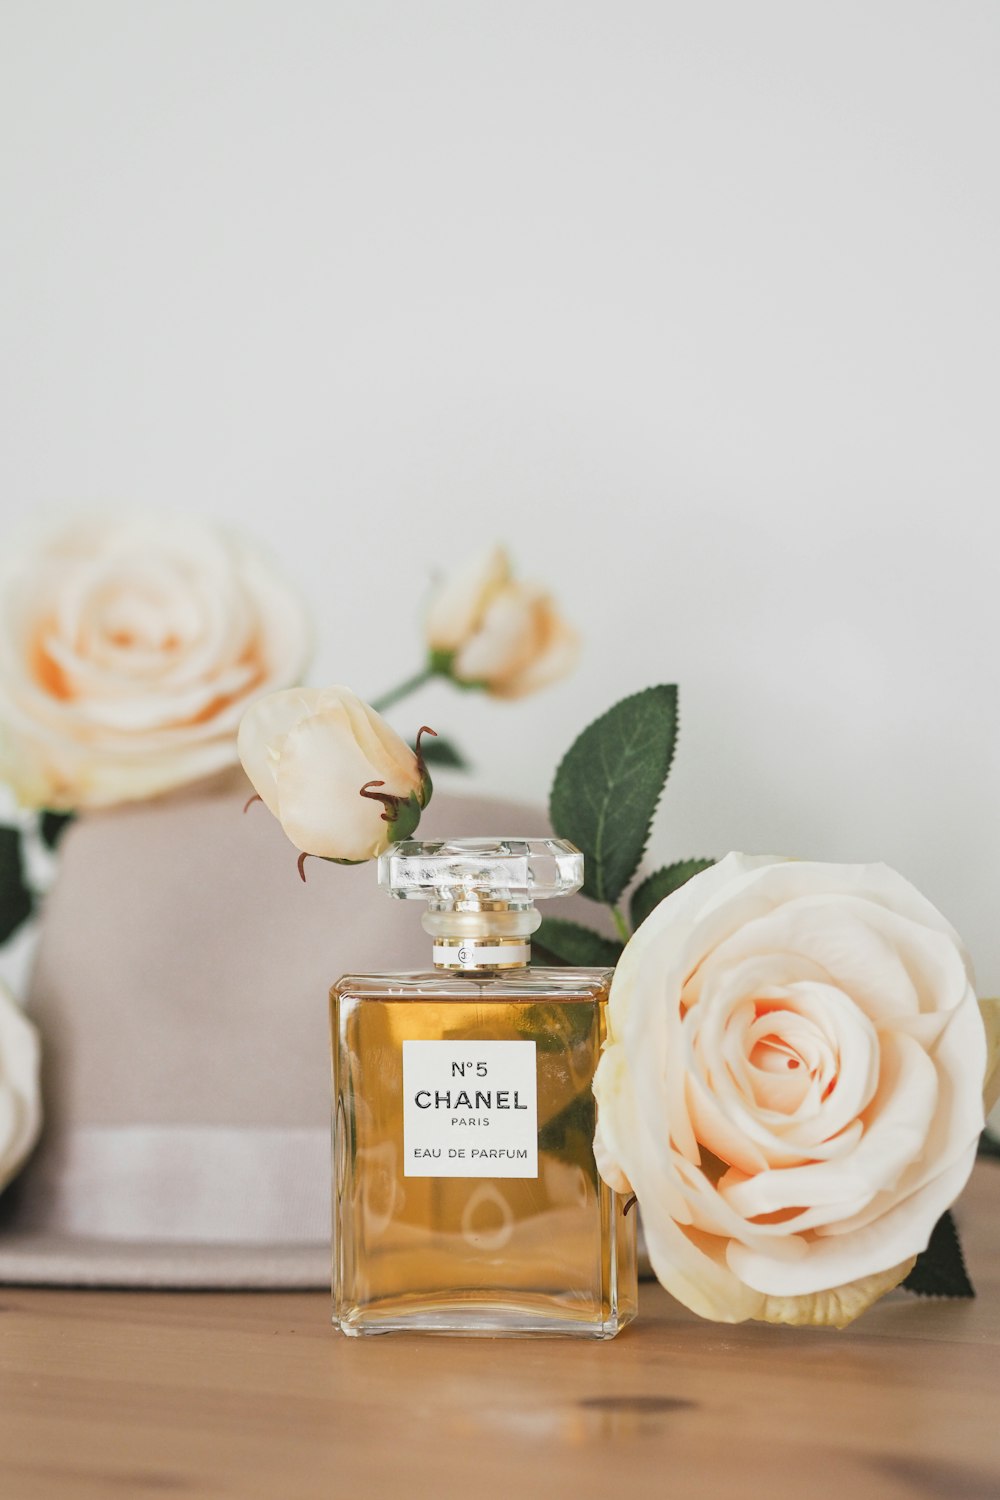 Eine Flasche Chanel-Parfüm auf einem Tisch neben Blumen